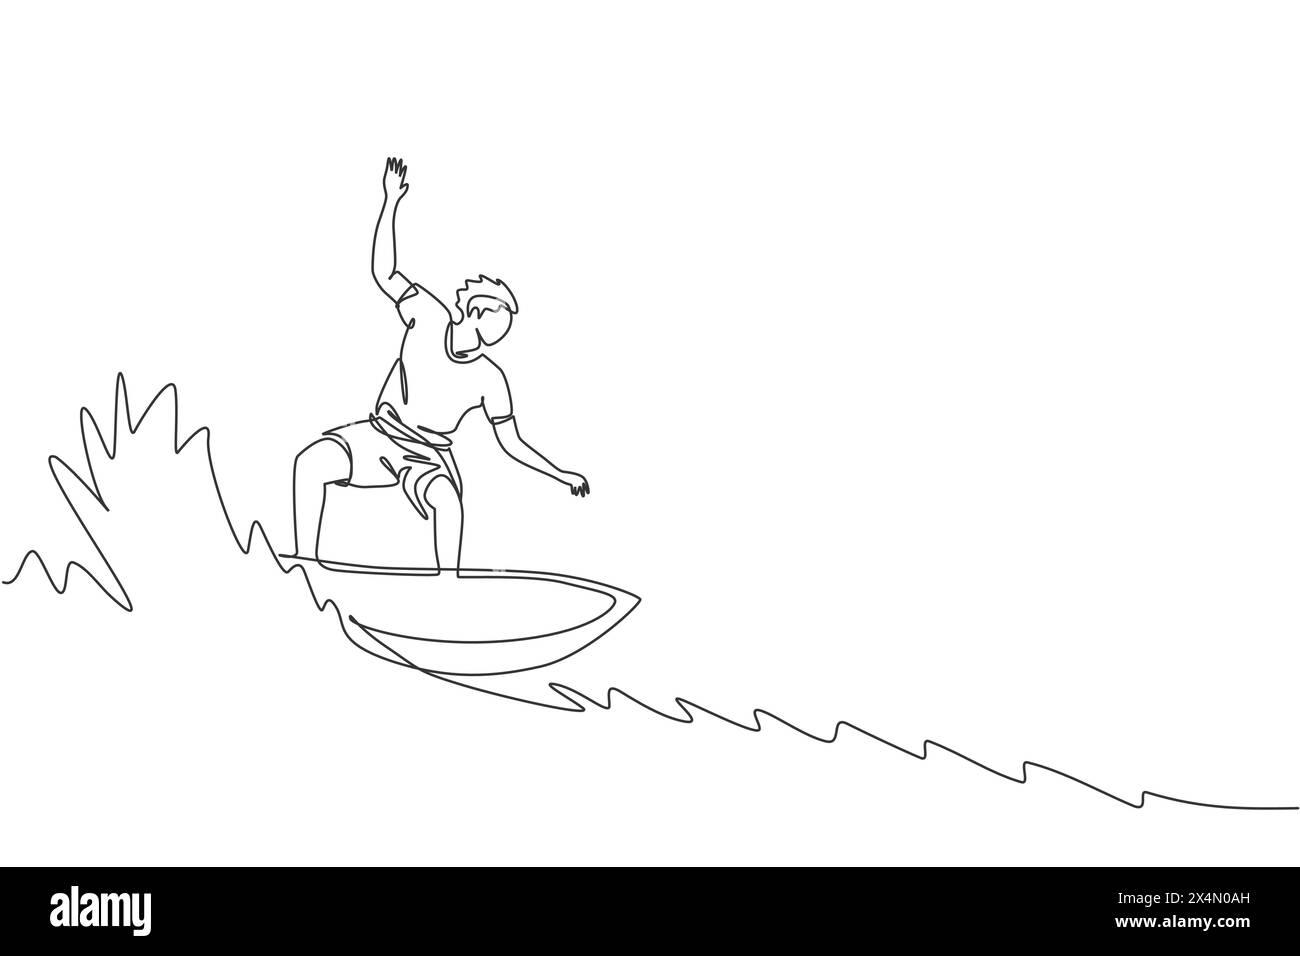 Un dessin simple ligne de jeune homme surfeur sportif chevauchant sur le baril de grandes vagues dans l'illustration vectorielle graphique de paradis de plage de surf. Eau extrême spo Illustration de Vecteur